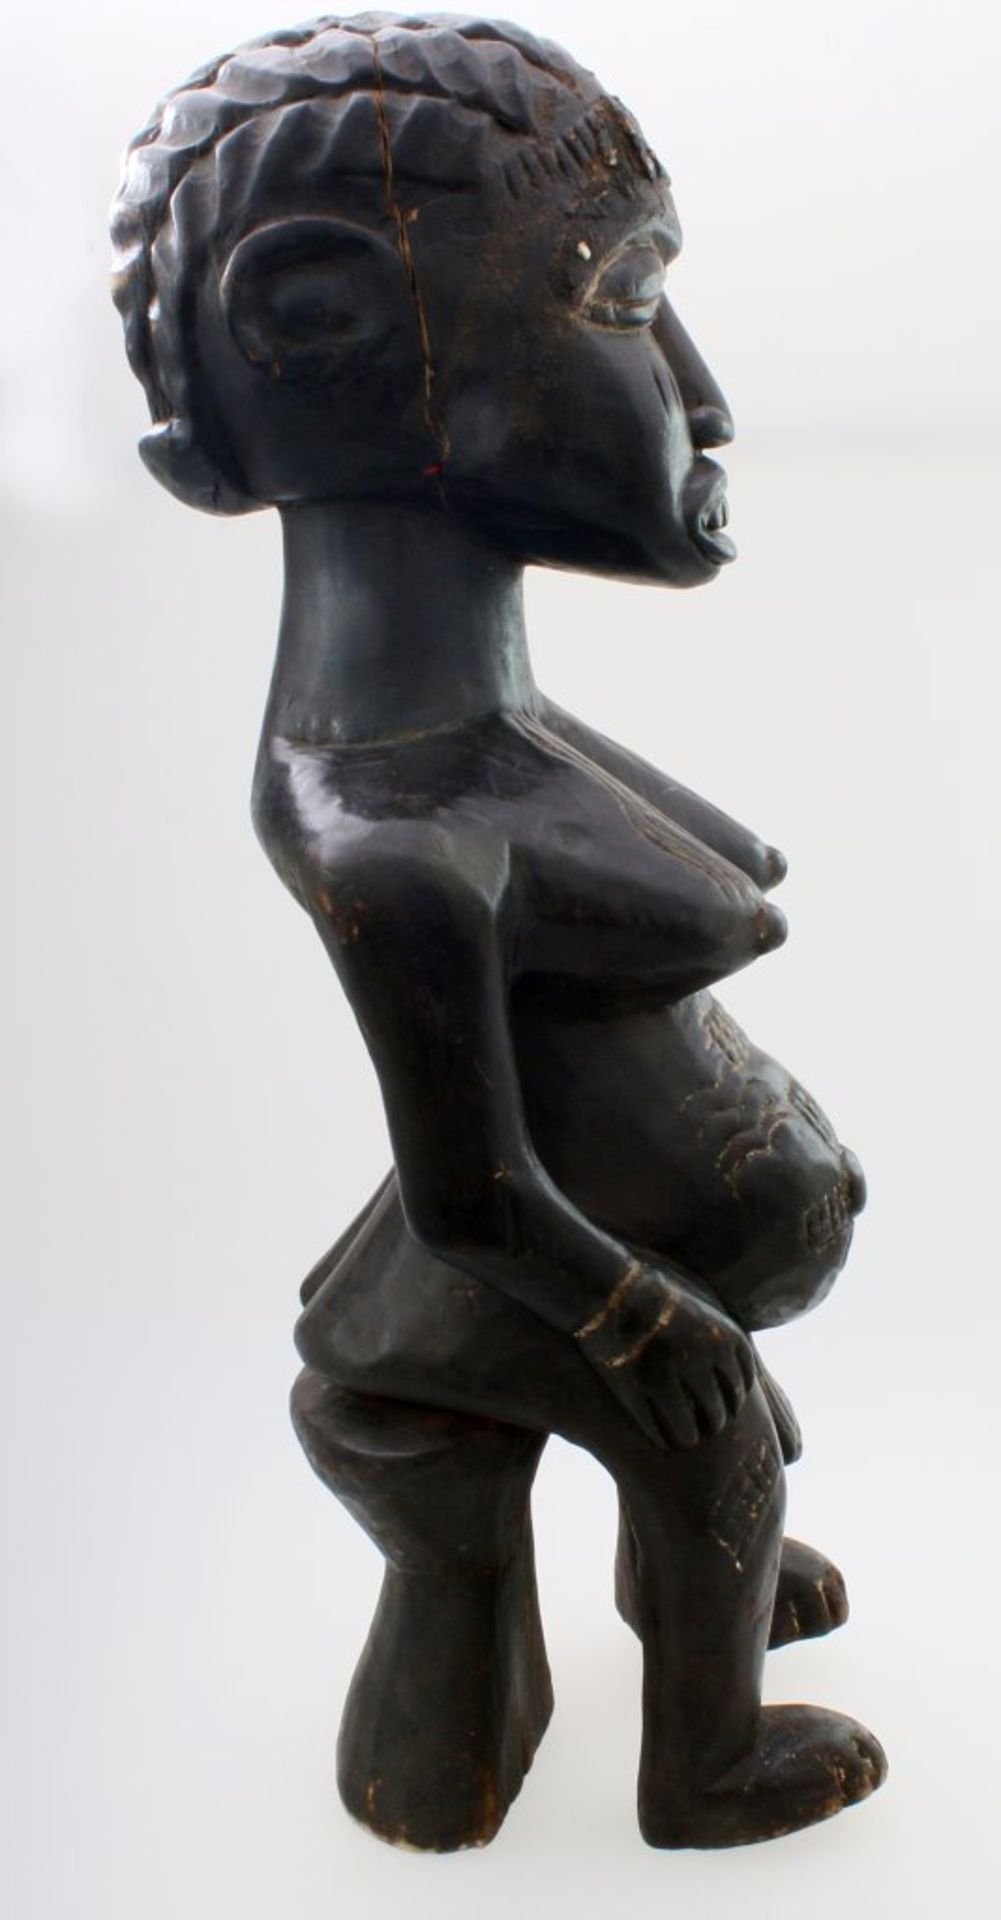 Westafrika - Große Ahnenfigur Schwarz / braun gefärbtes Tropenholz. Auf Stütze sitzende Figur, - Image 4 of 6